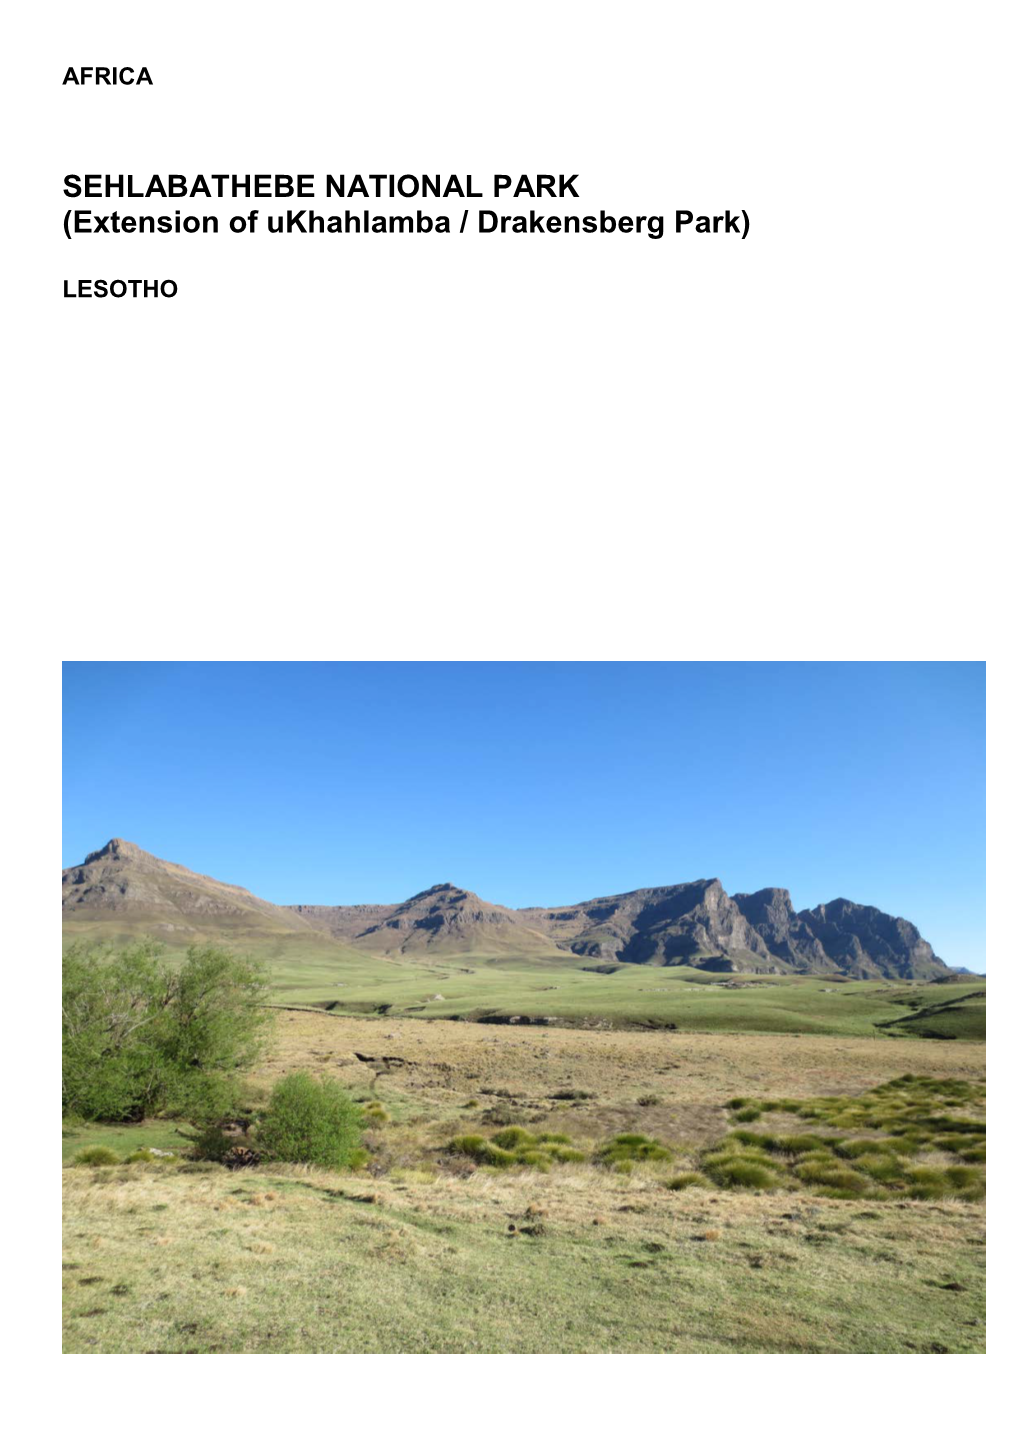 SEHLABATHEBE NATIONAL PARK (Extension of Ukhahlamba / Drakensberg Park)